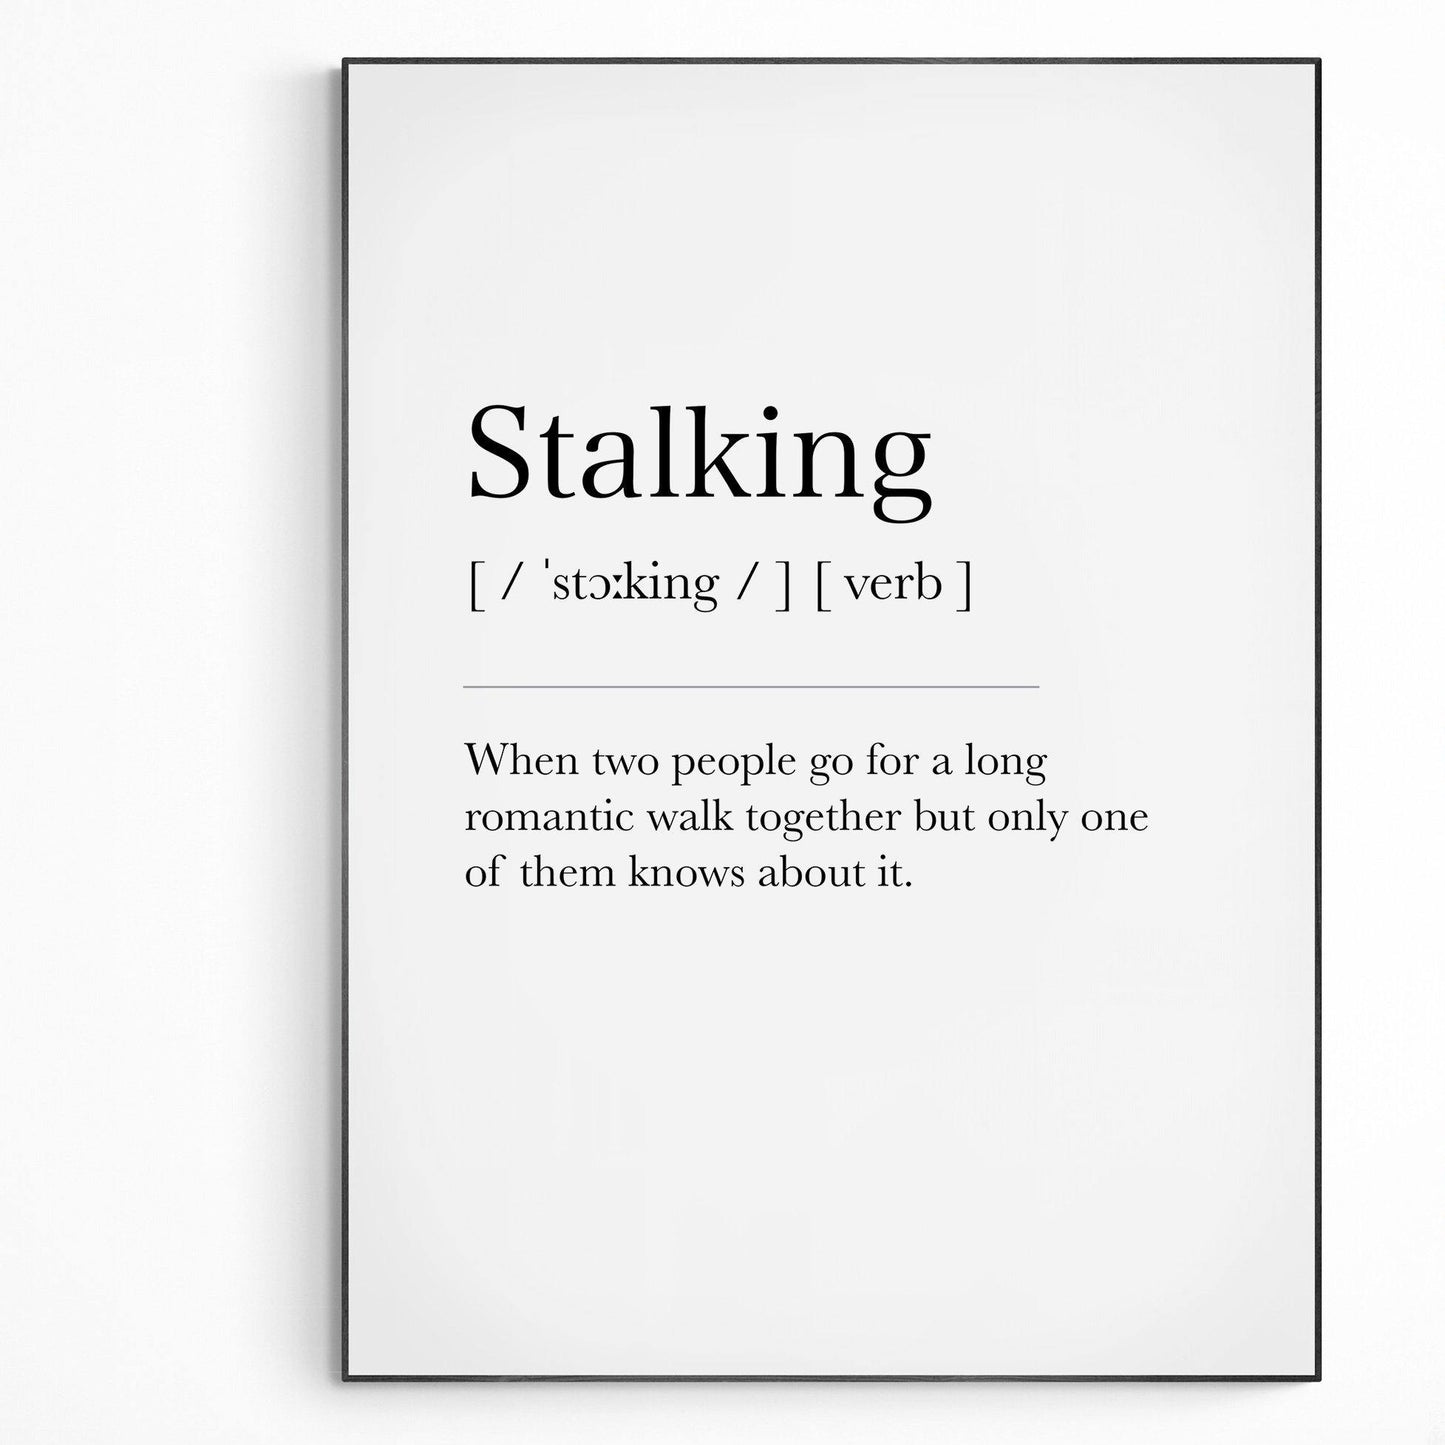 Stalking